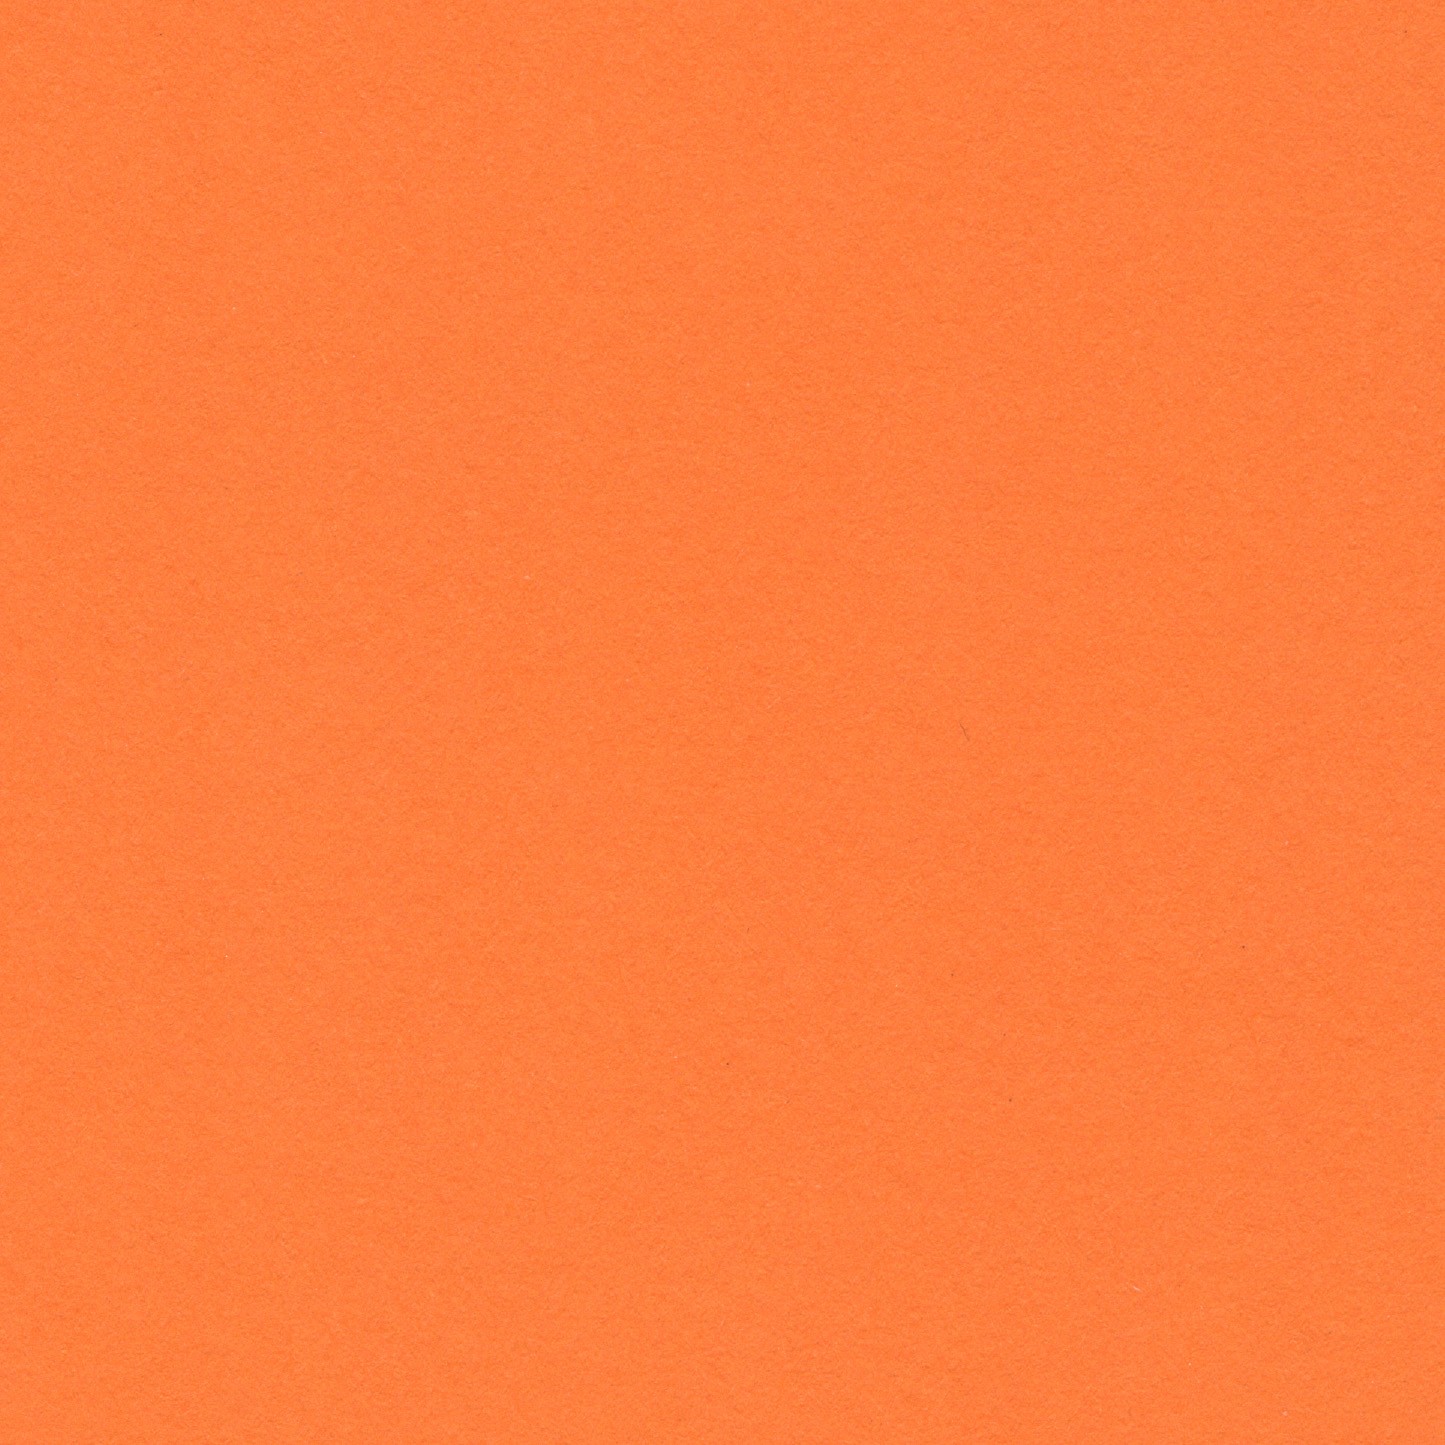 Orange - Bright 150gsm. 